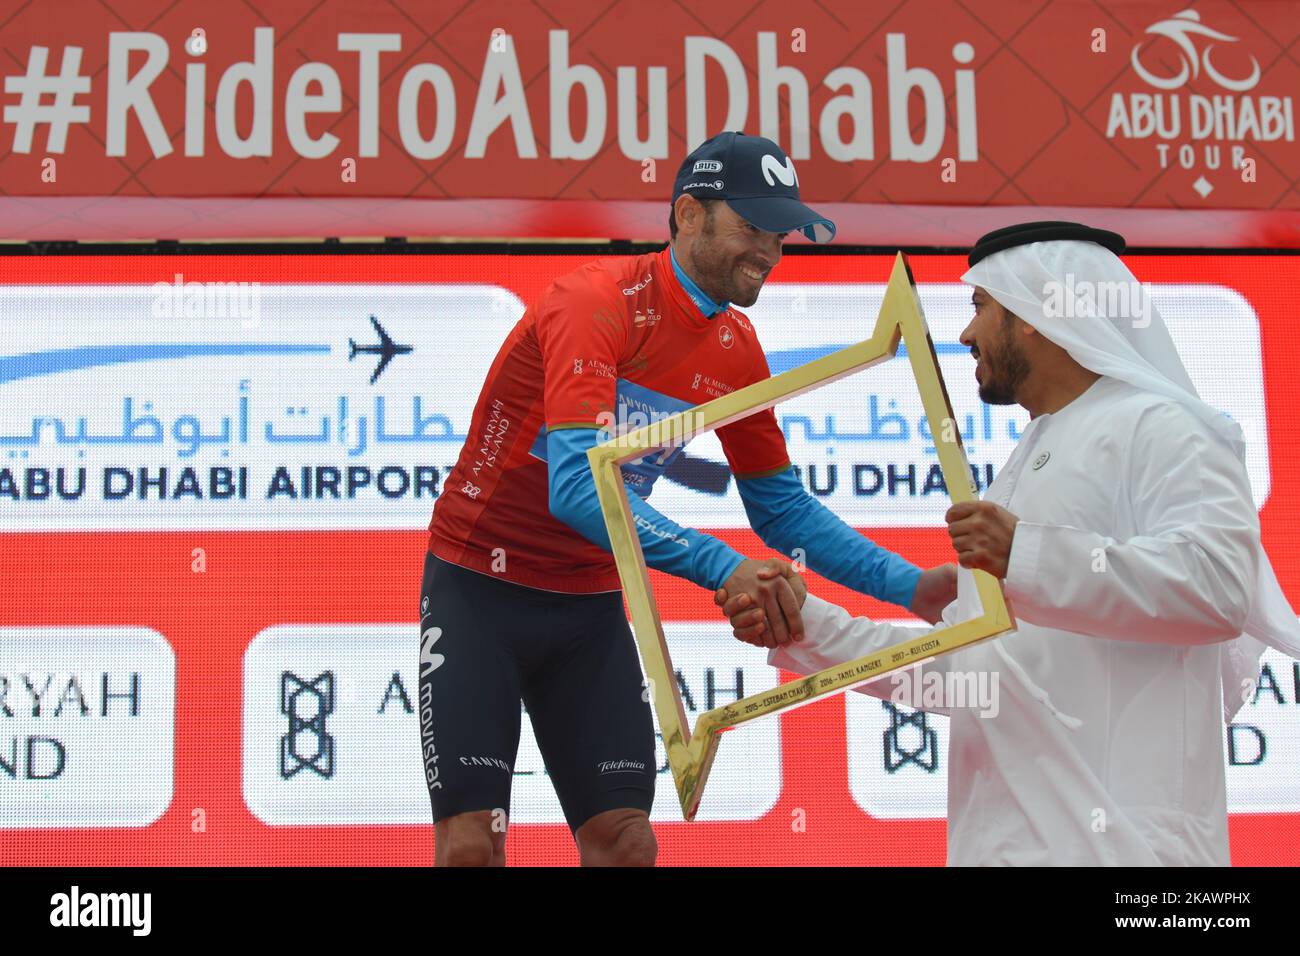 Alejandro Valverde spagnolo del Movistar Team riceve l'Abu Dhabi Tour Trophy dopo aver vinto la quinta e ultima fase dell'Abu Dhabi Tour 2018, la tappa dei 199km aeroporti di Abu Dhabi da Qasr al Muwaiji a Jebel Hafeet. Domenica 25 febbraio 2018 a Qasr al Muwaiji, Abu Dhabi, Emirati Arabi Uniti. (Foto di Artur Widak/NurPhoto) Foto Stock